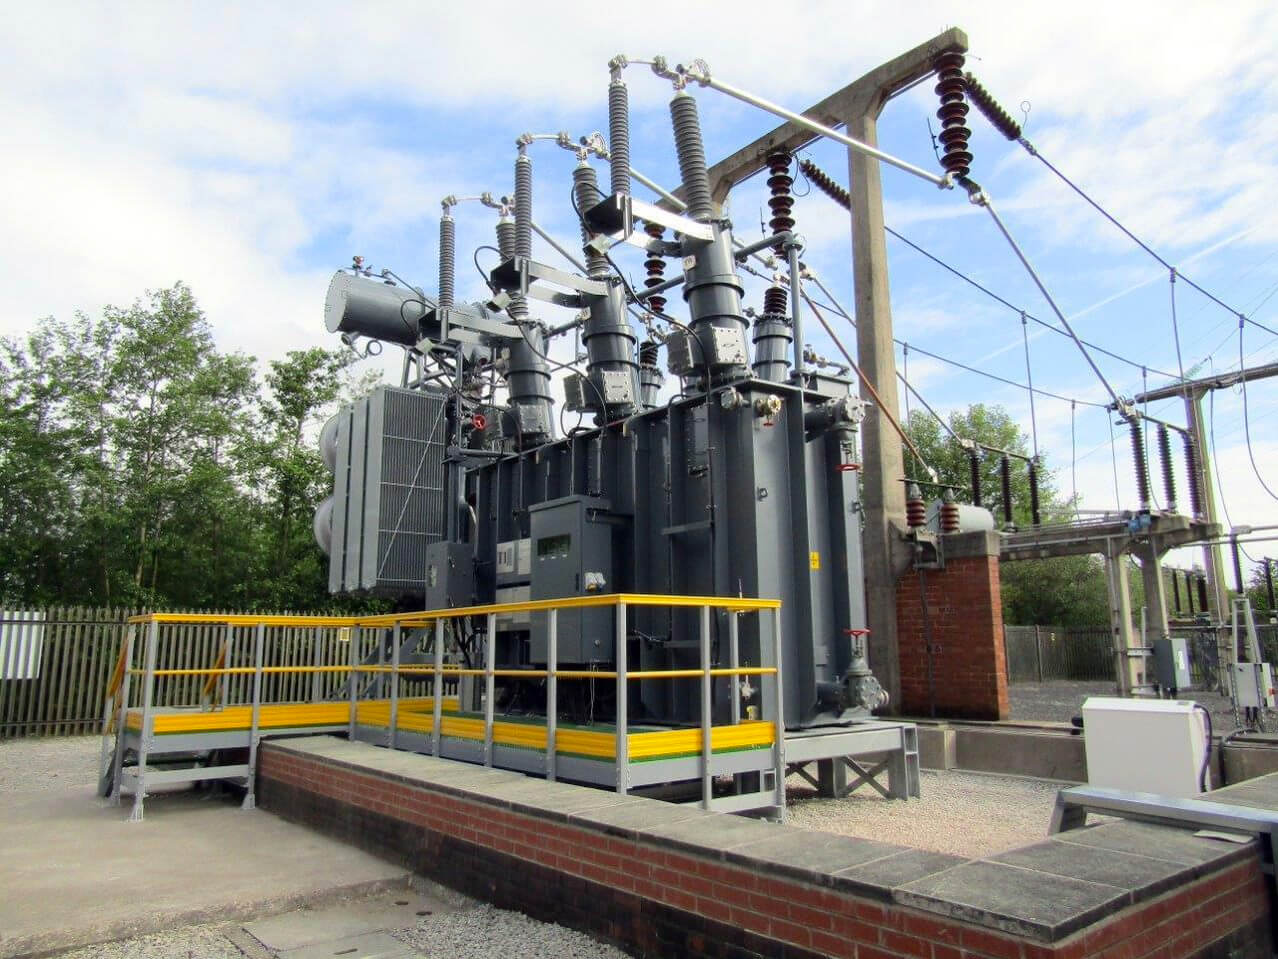 Image of electronic power substation